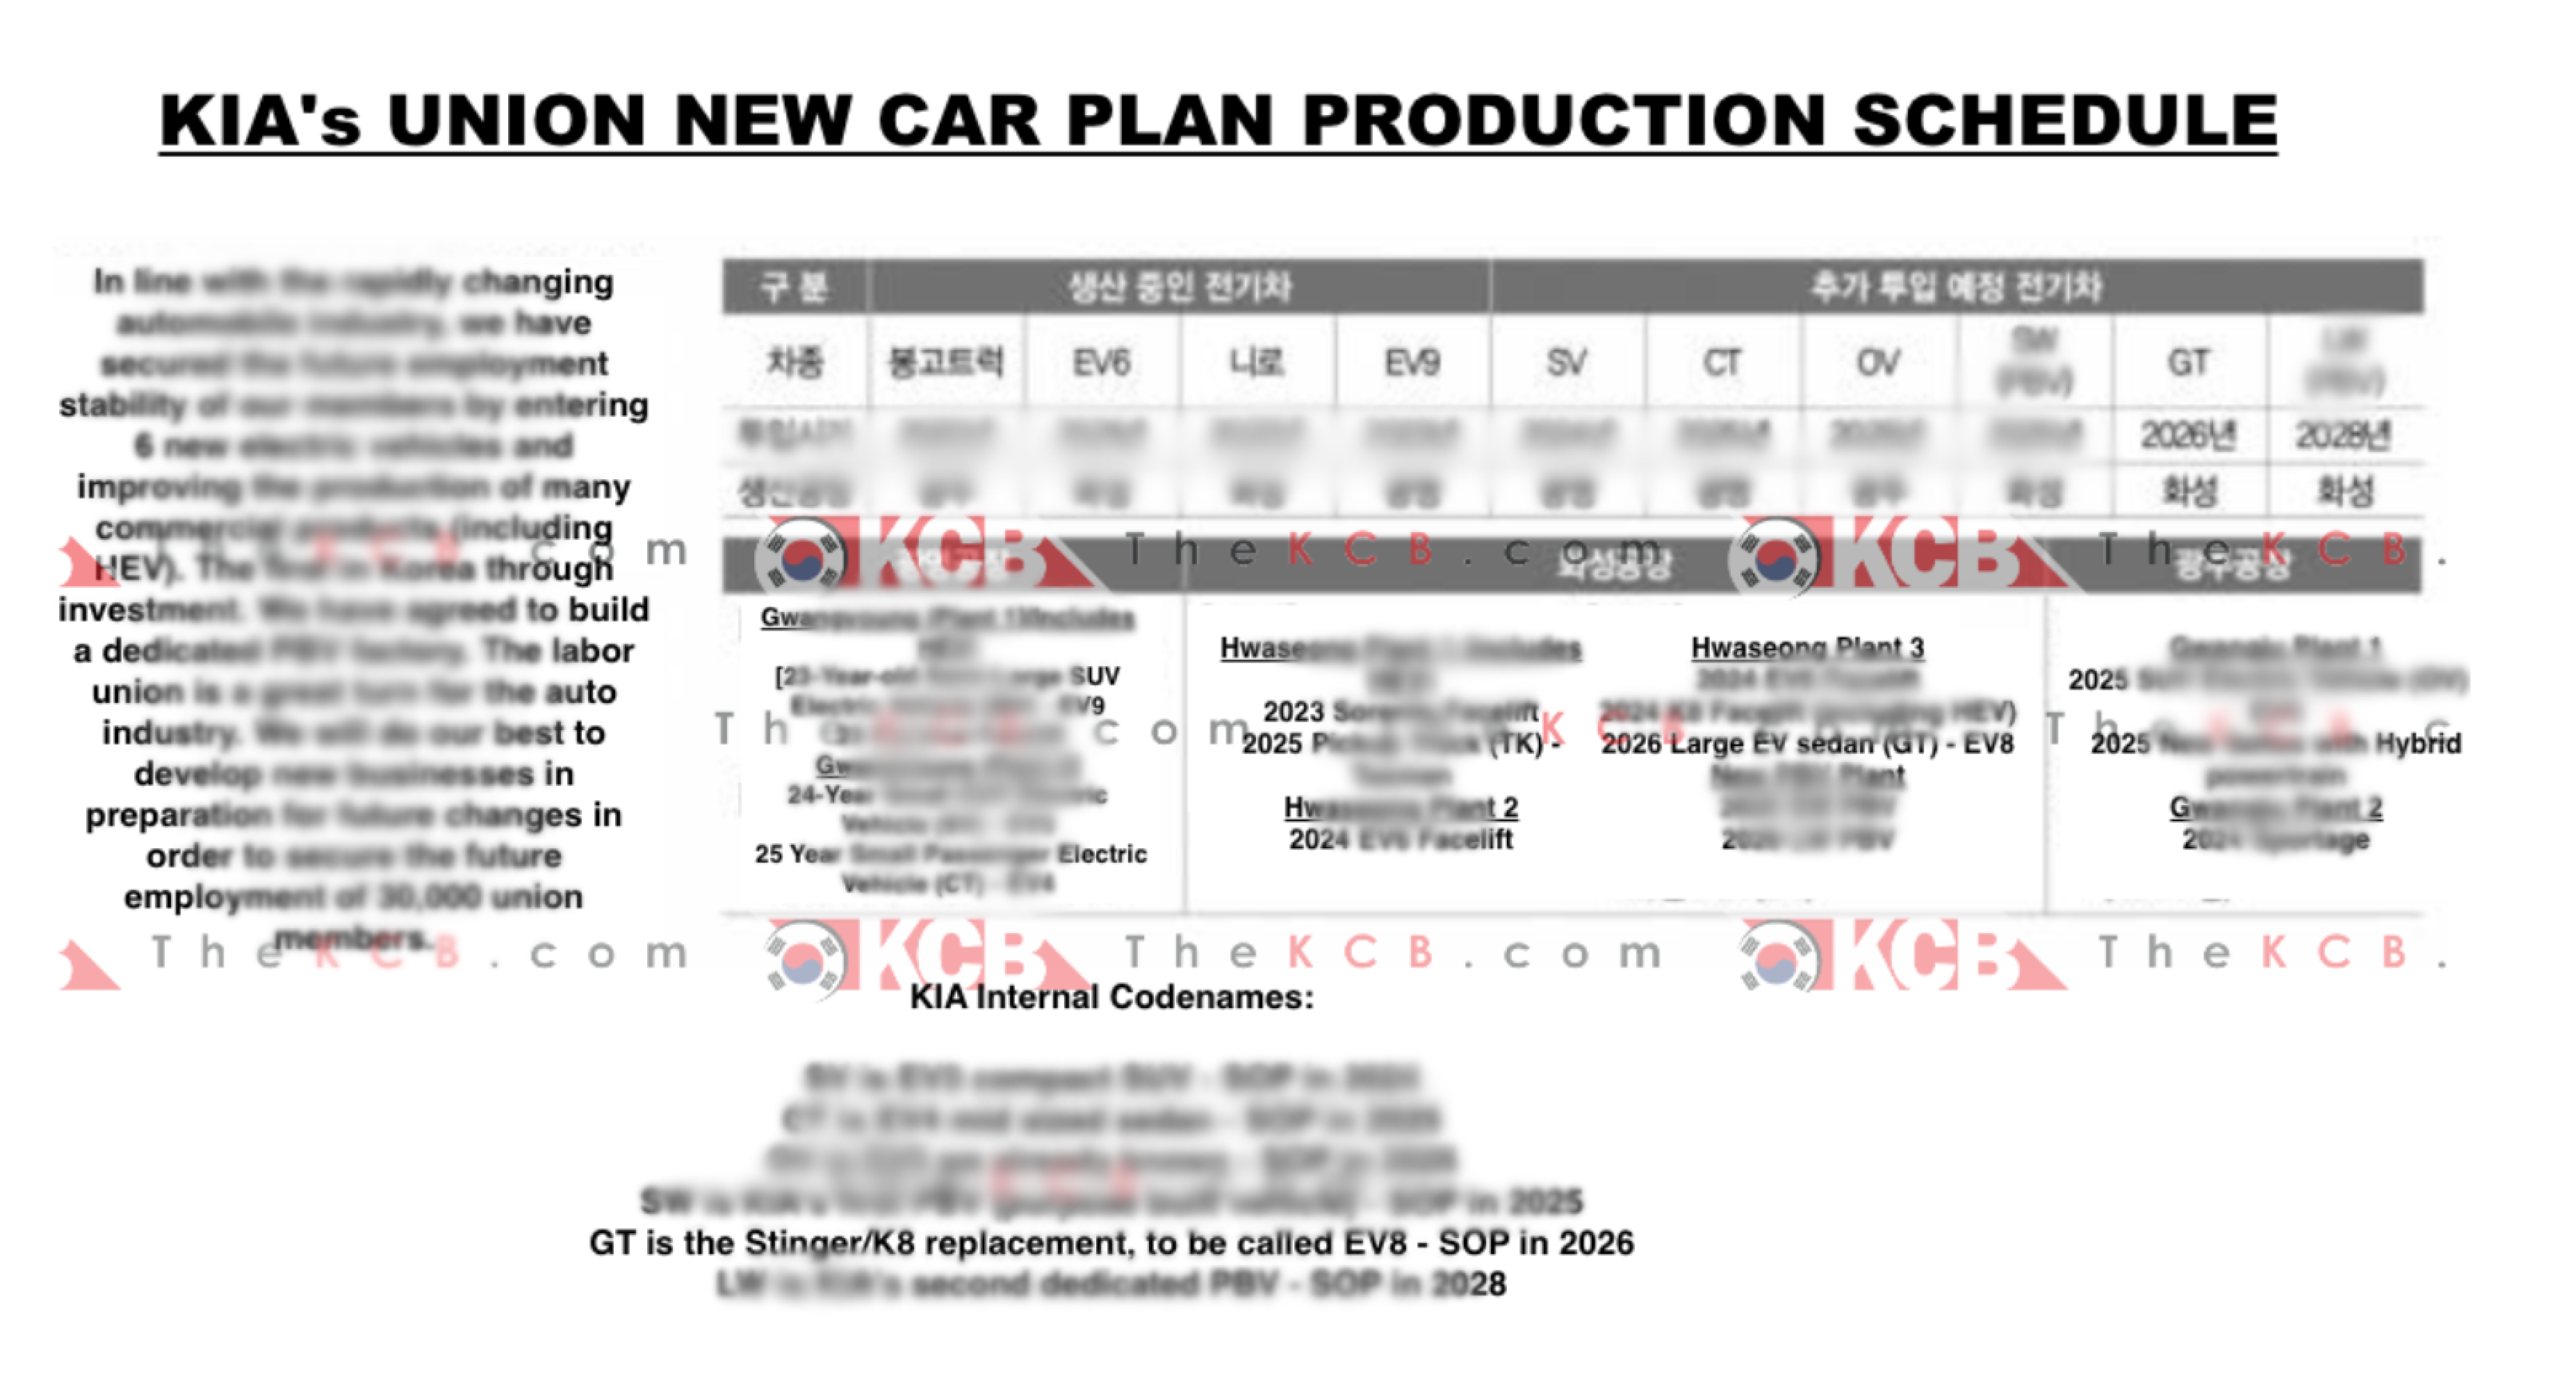 8ec51899/kia union new car plan production schedule png